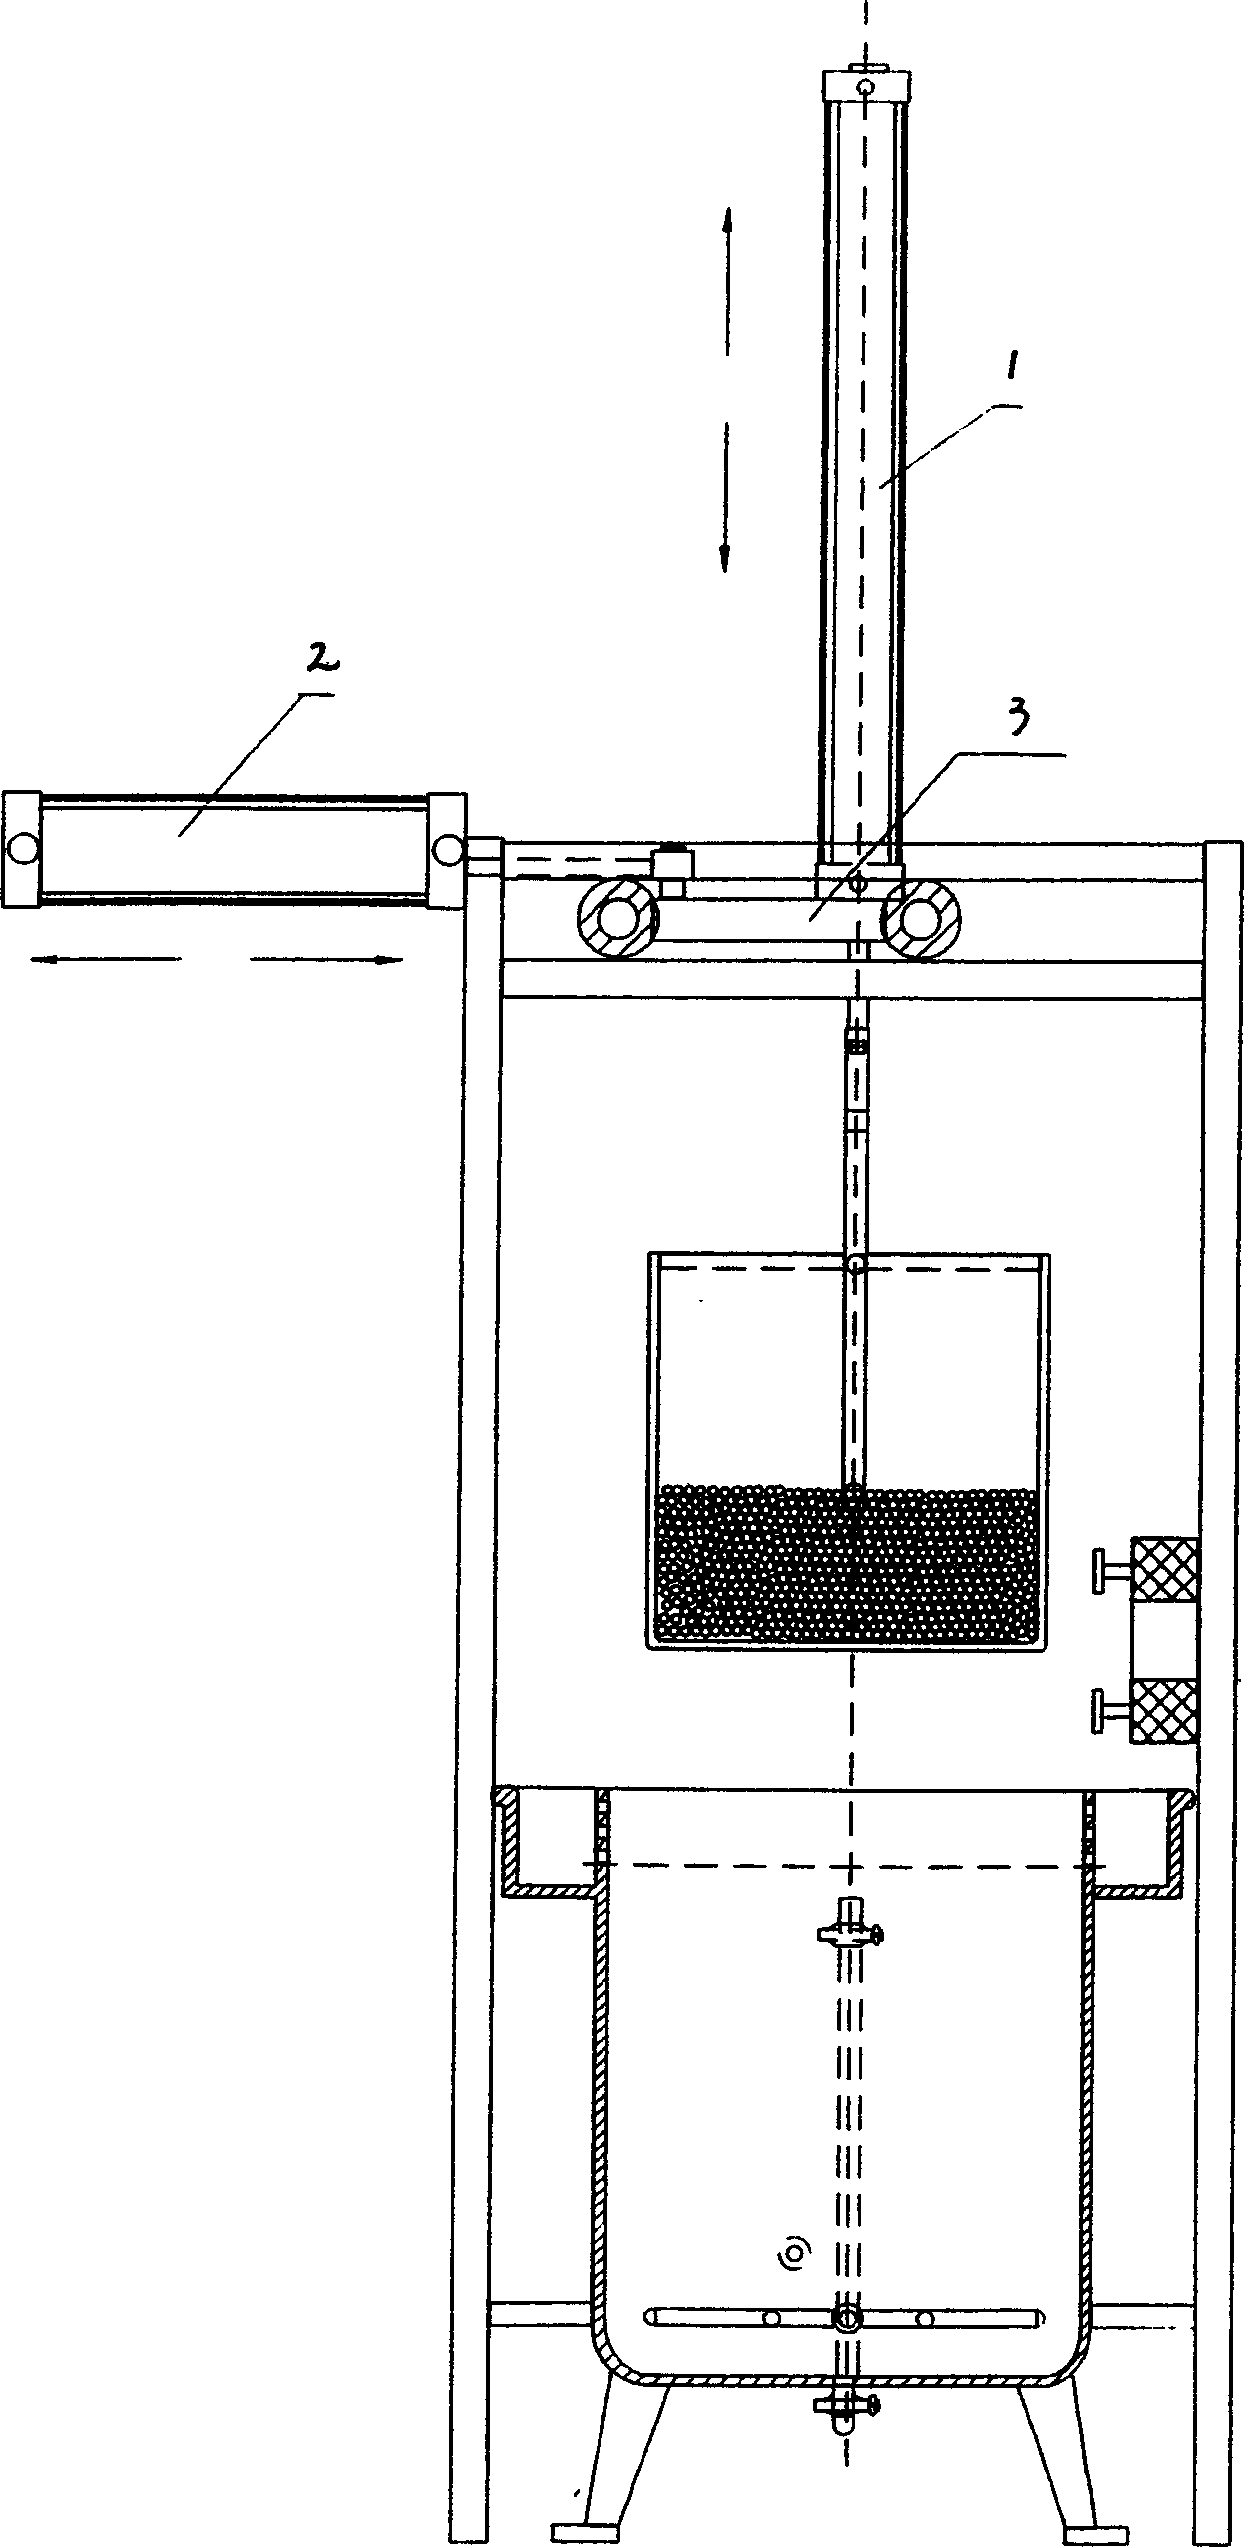 Semi-automatic rubber cork rinsing machine